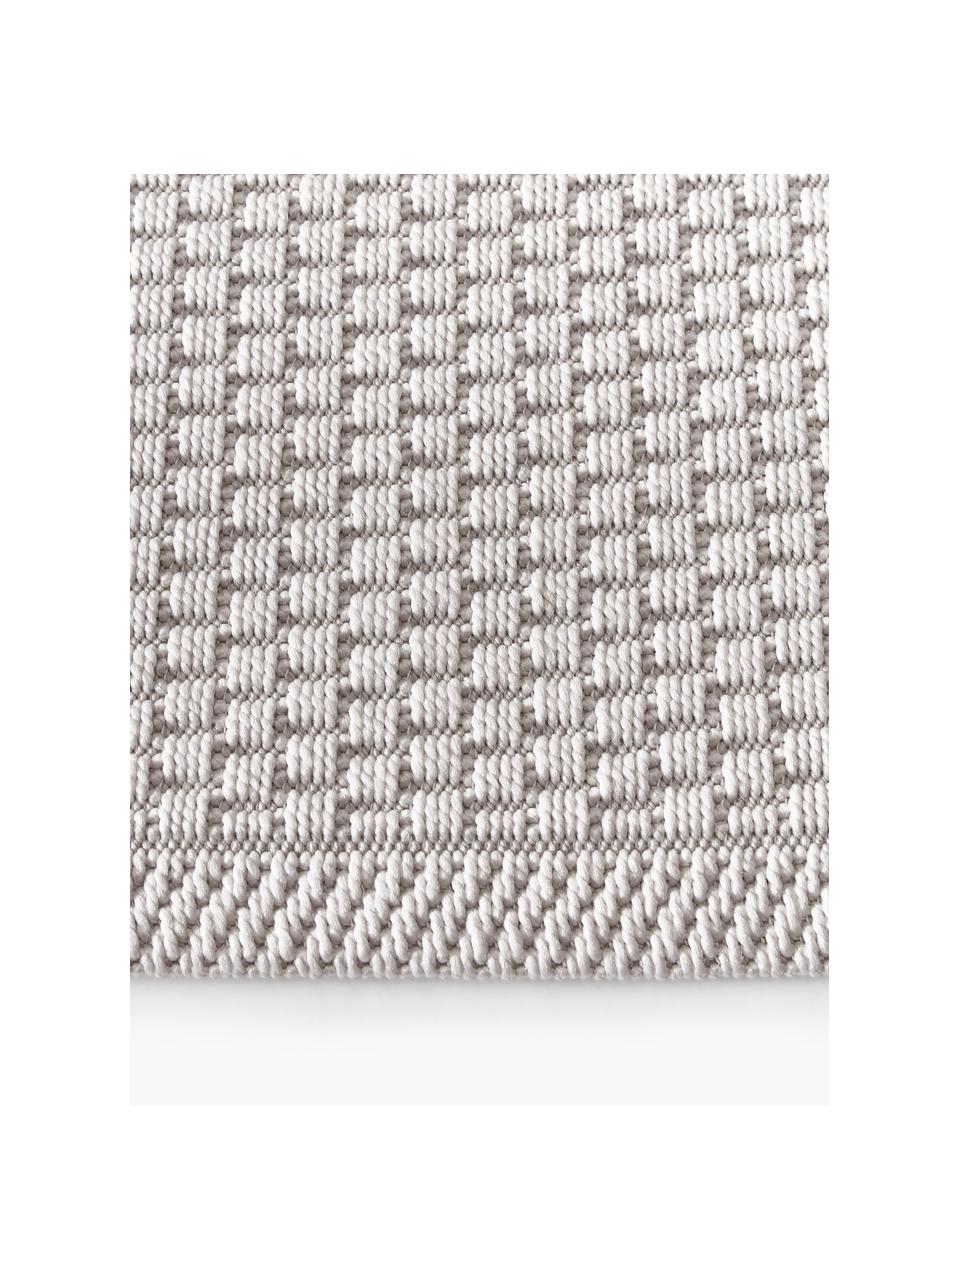 Okrągły dywan wewnętrzny/zewnętrzny Toronto, 100% polipropylen, Kremowobiały, Ø 120 cm (Rozmiar S)